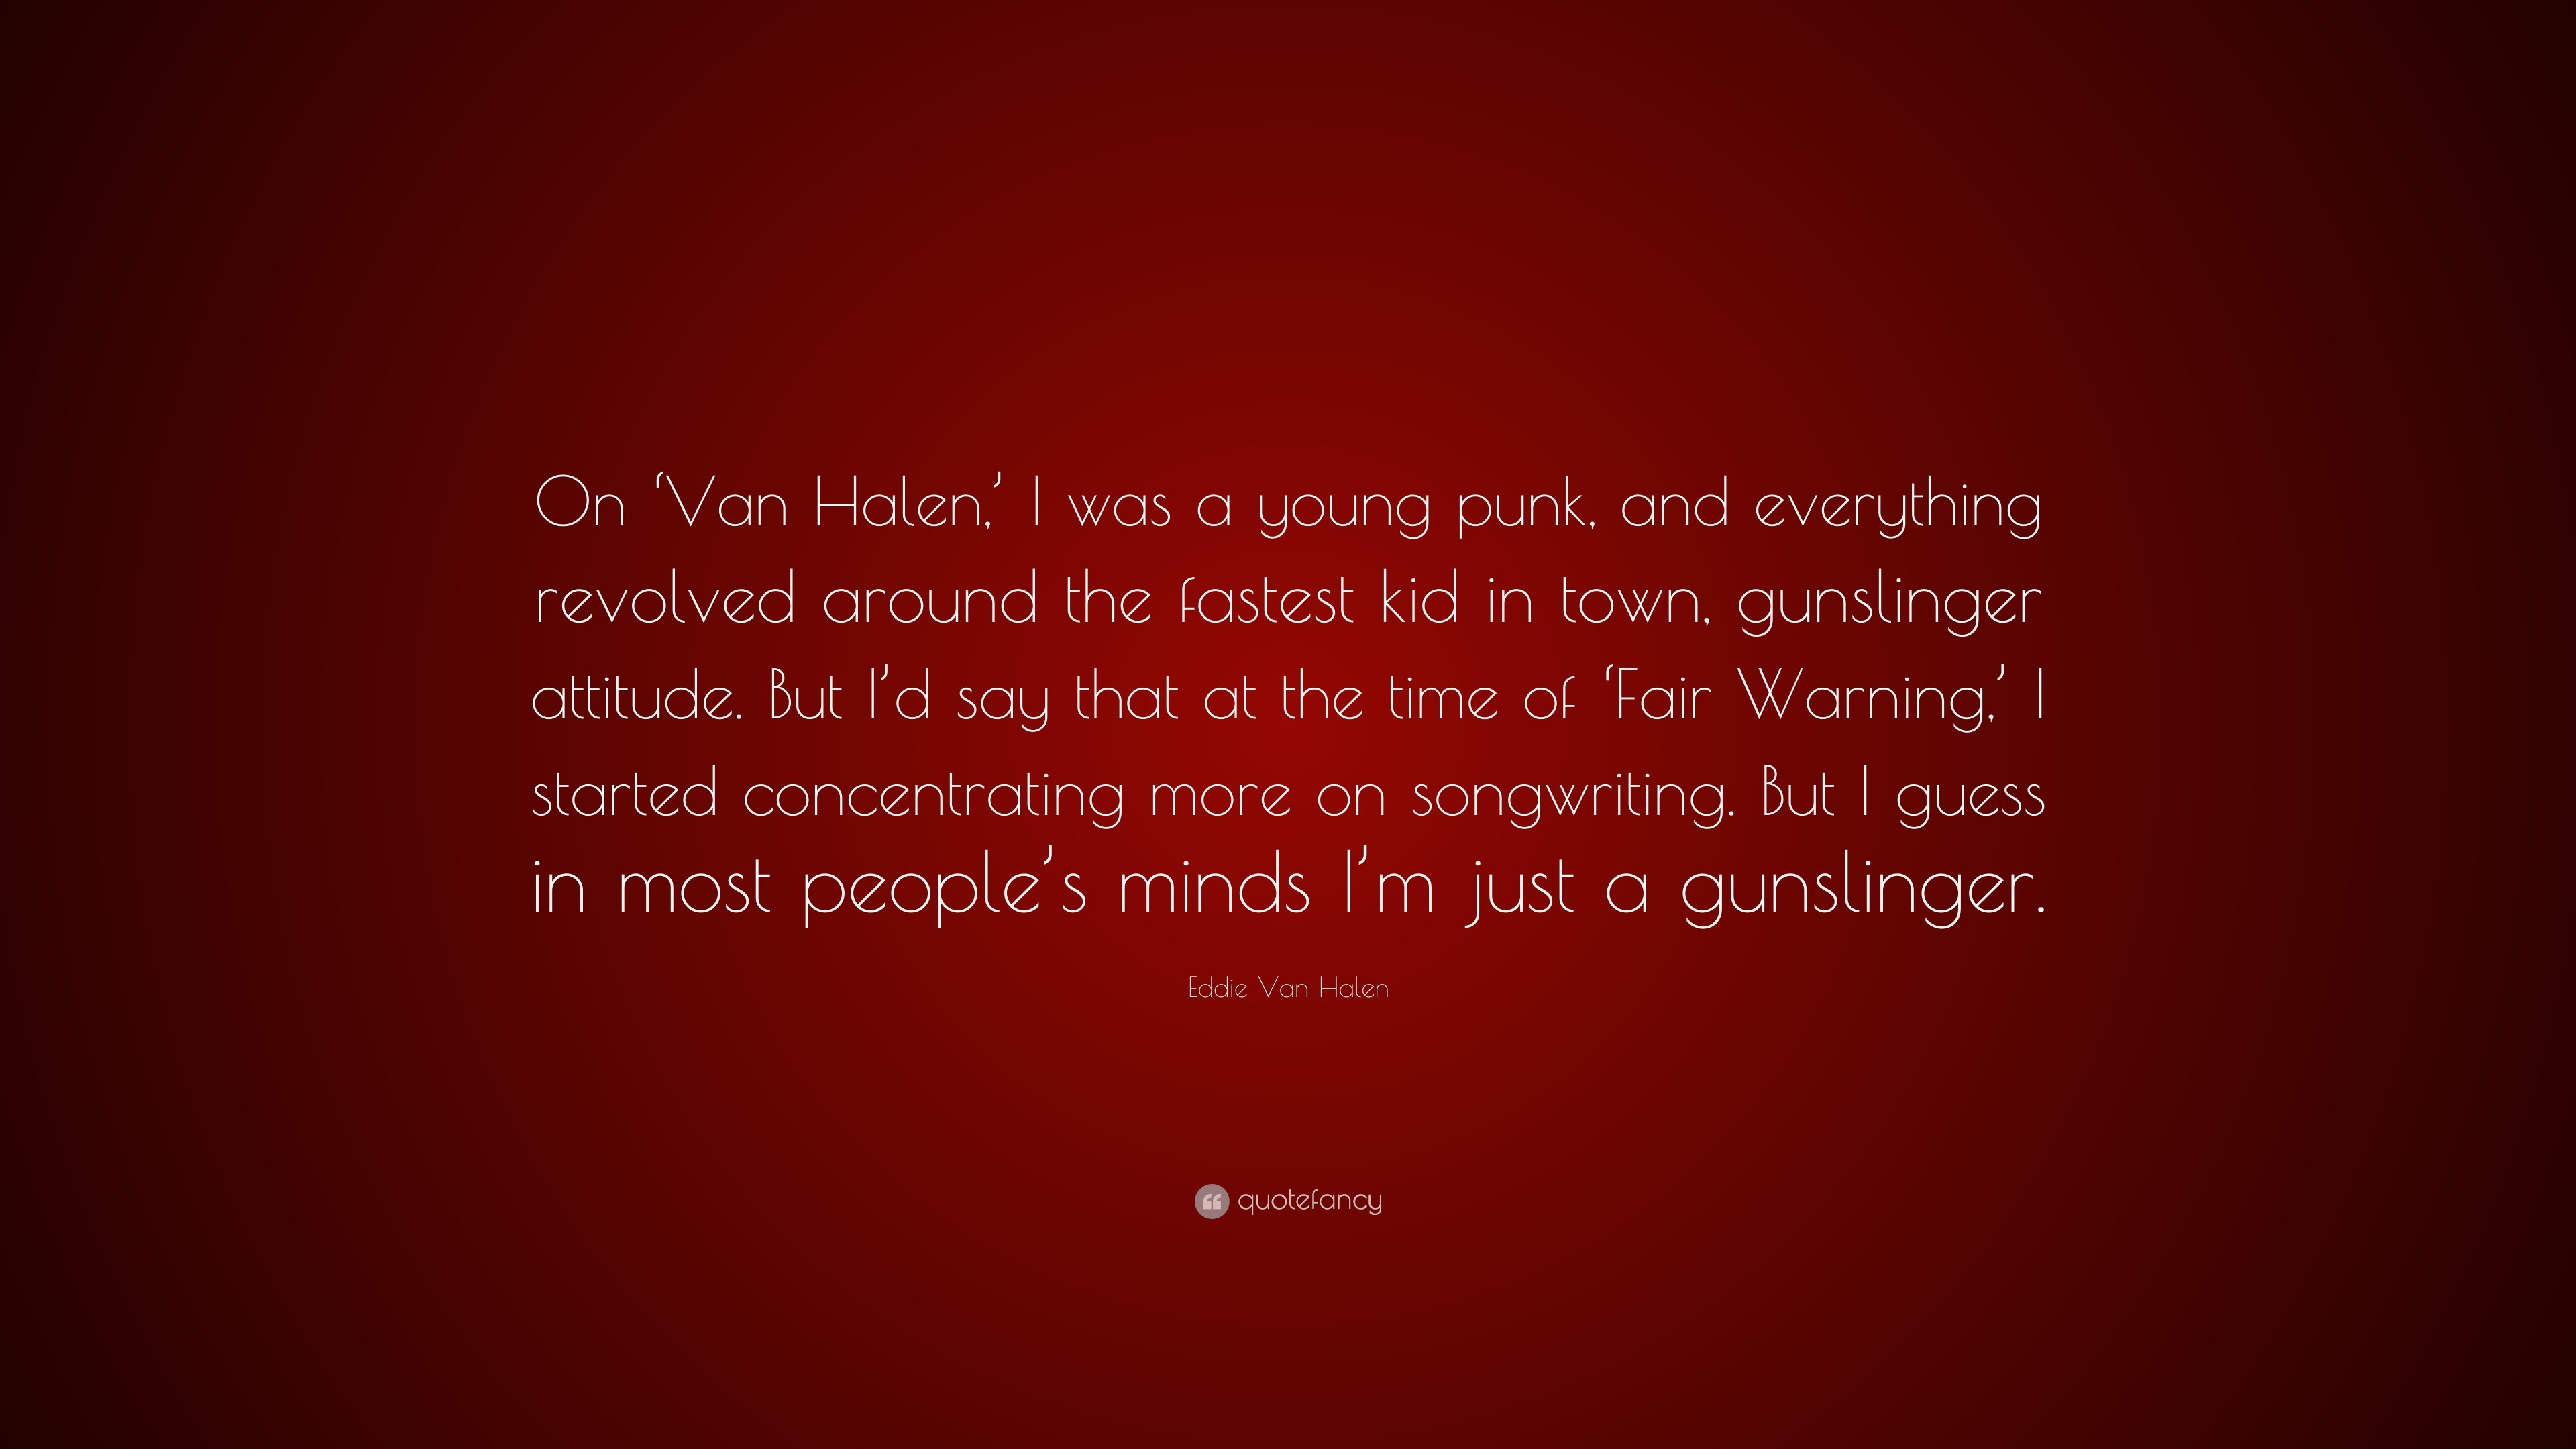 3840x2160 Eddie Van Halen Quote: “On 'Van Halen,' I was a young